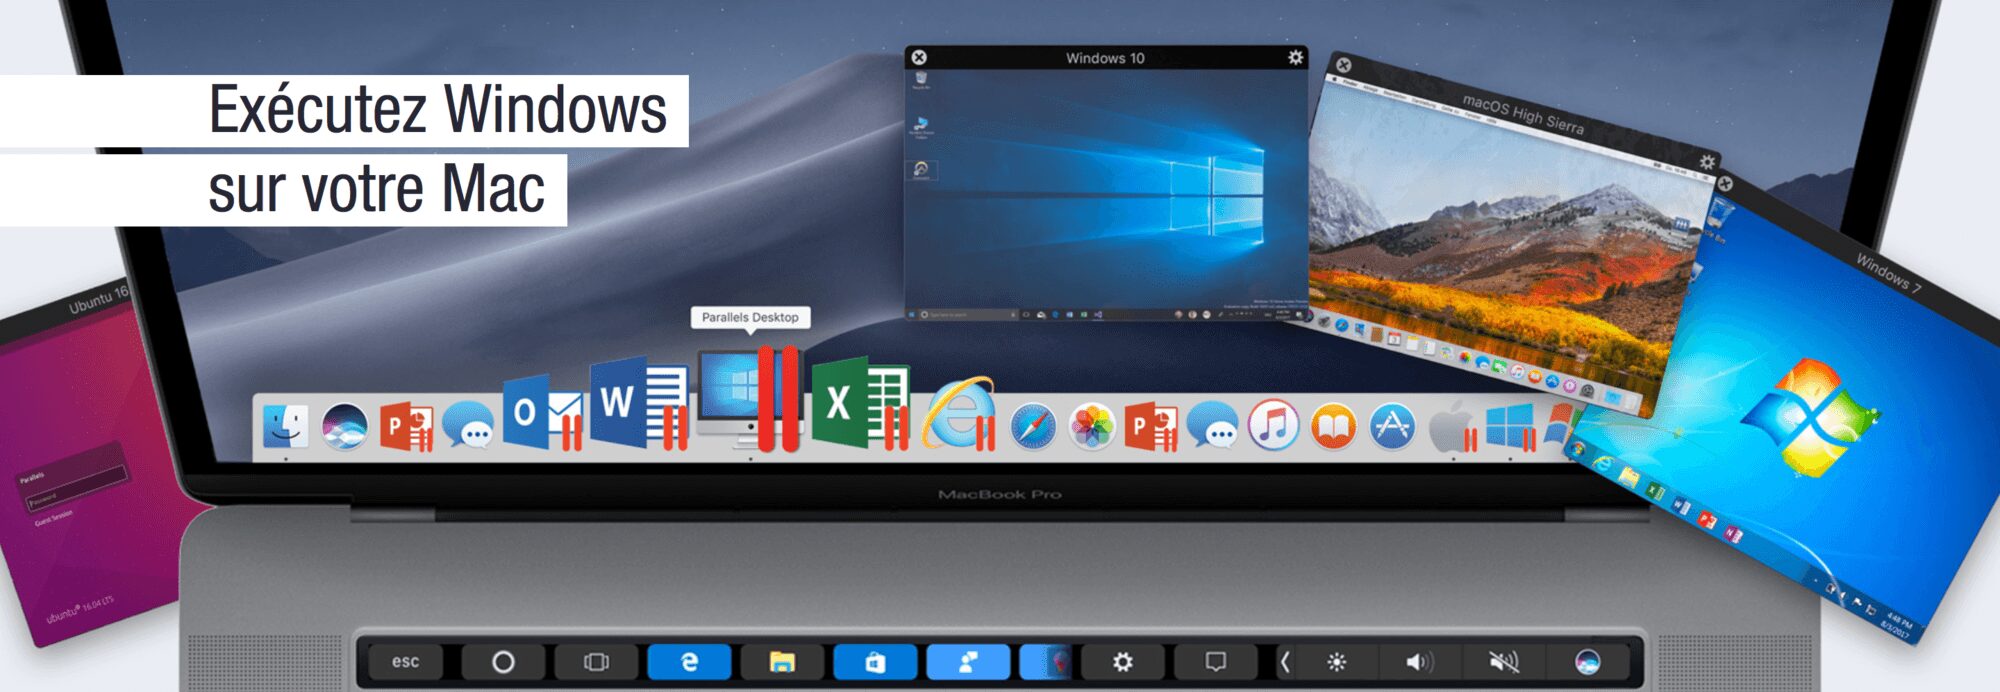 Parallels Desktop 14 Capture d’écran 2018 11 17 à 19 36 20 Actu – Parallels Desktop passe dans sa version 14 Mac